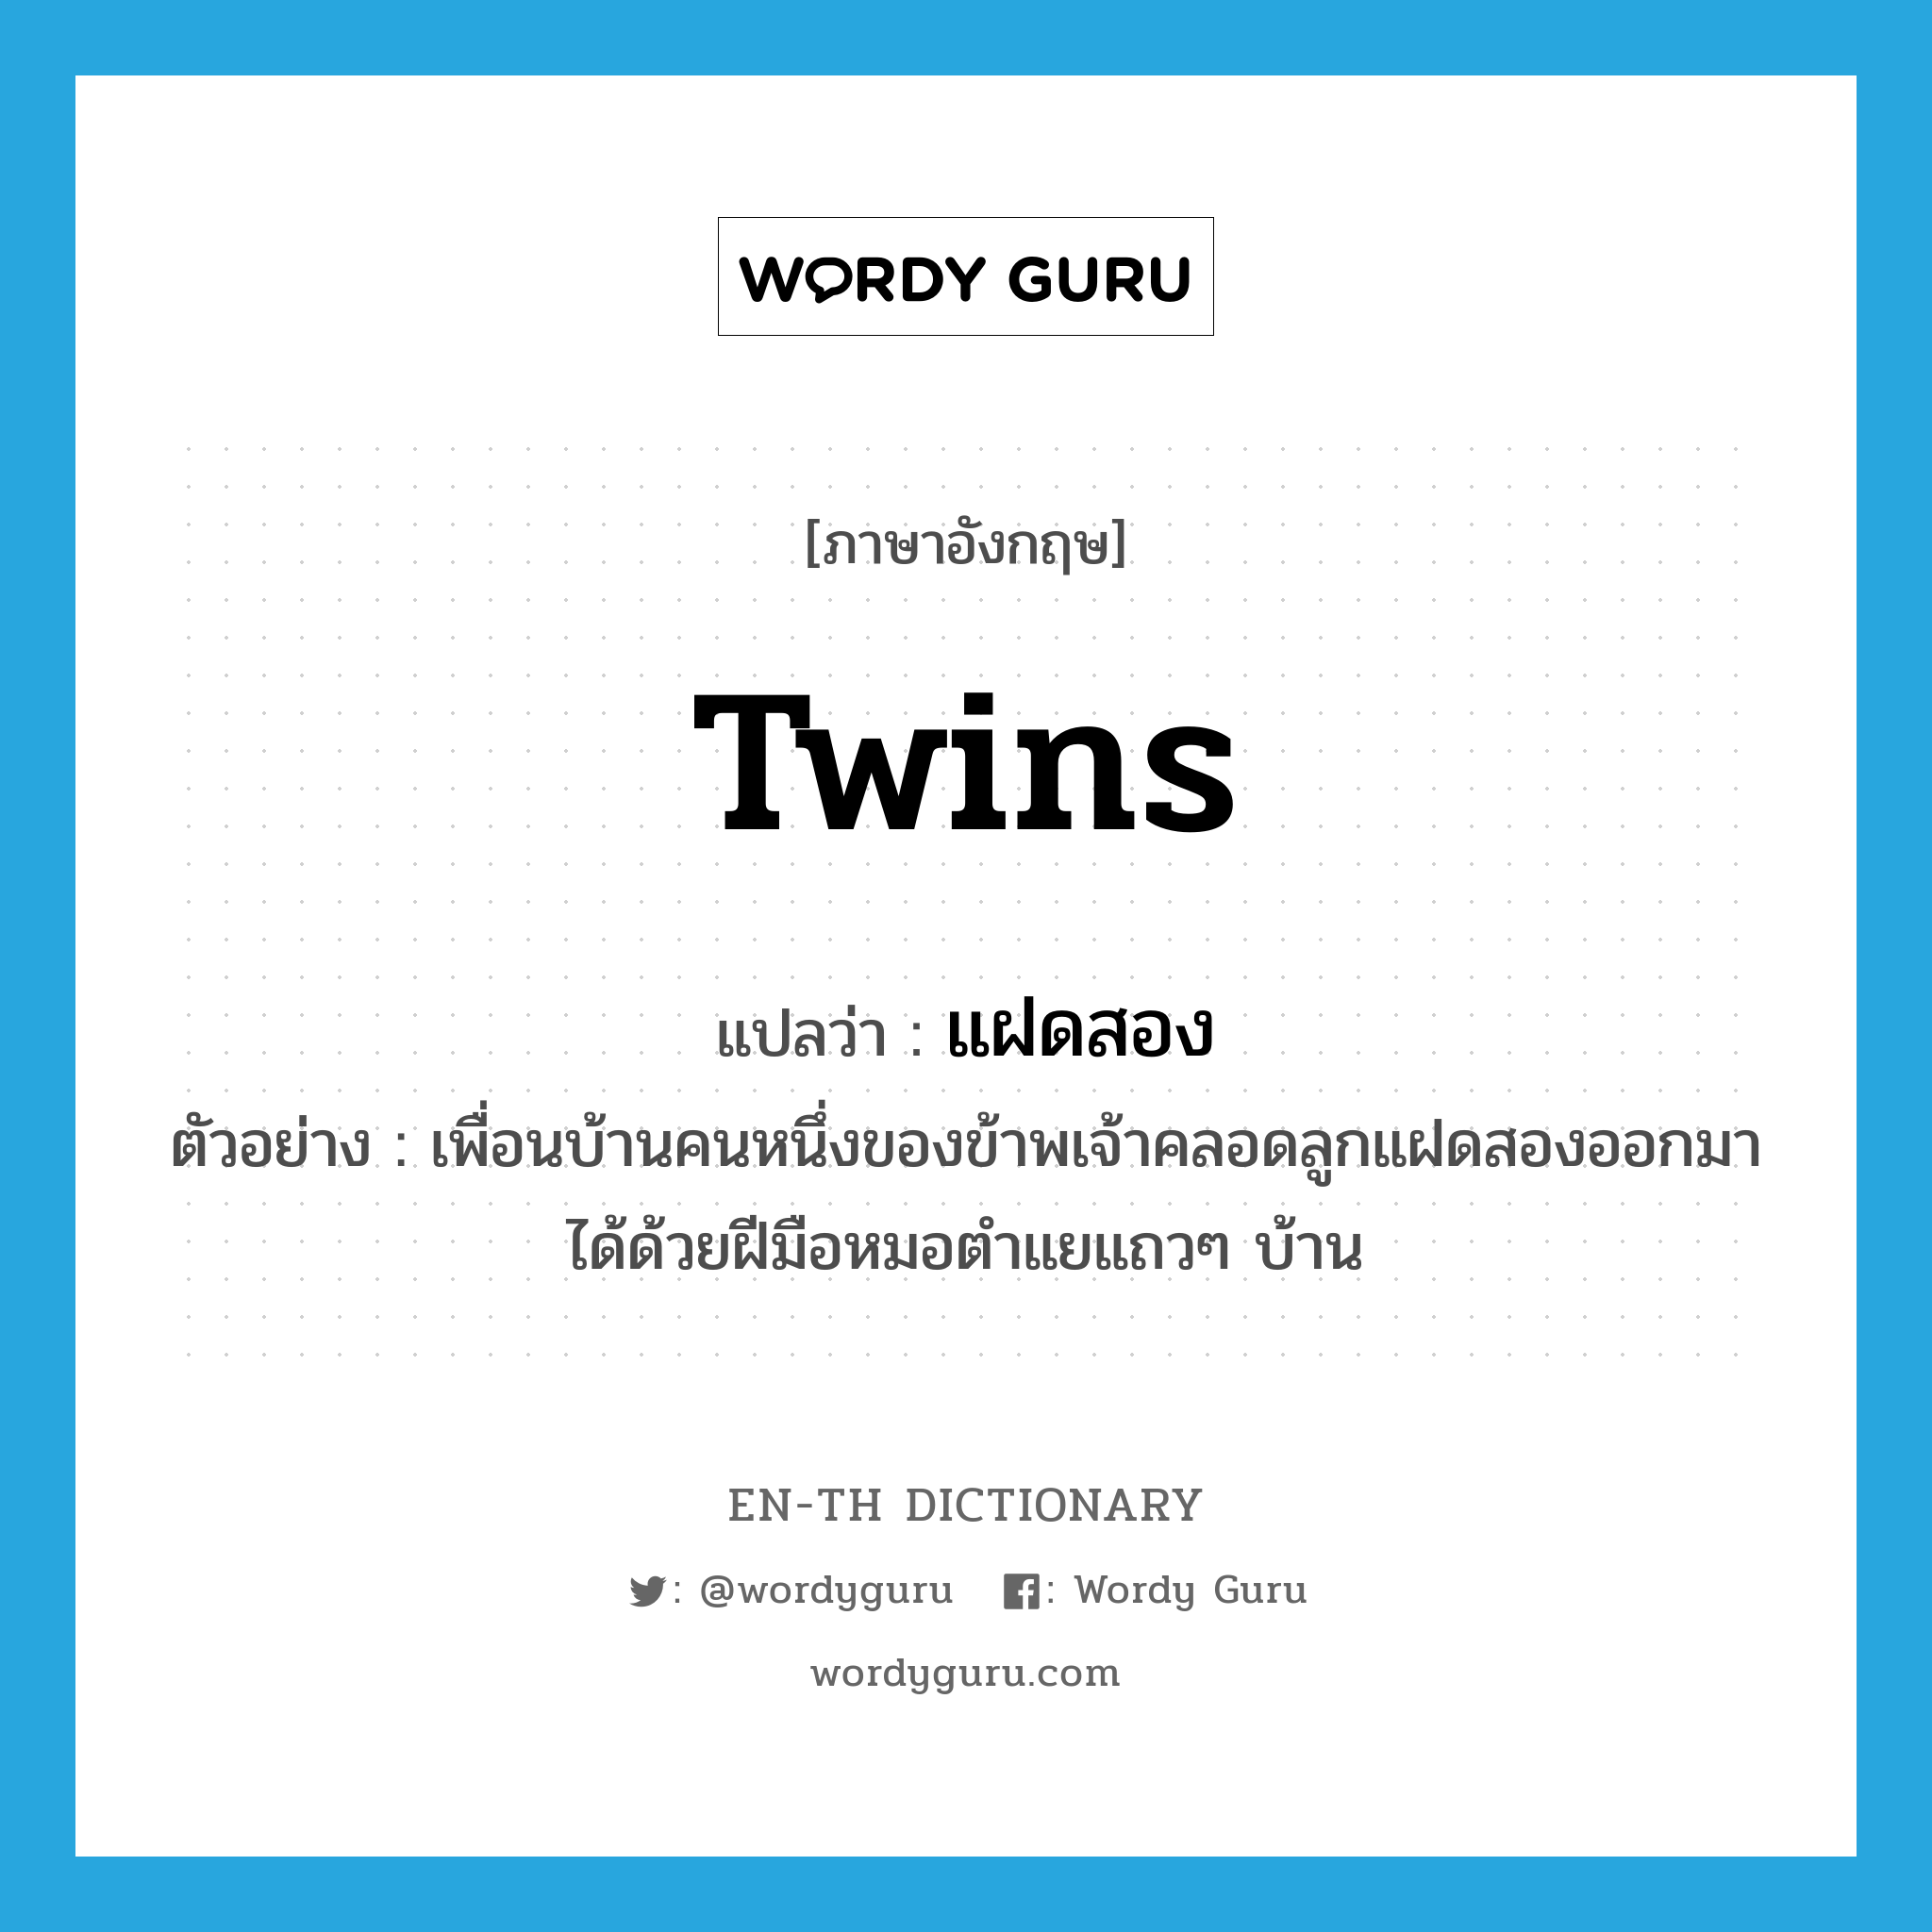 twins แปลว่า?, คำศัพท์ภาษาอังกฤษ twins แปลว่า แฝดสอง ประเภท N ตัวอย่าง เพื่อนบ้านคนหนึ่งของข้าพเจ้าคลอดลูกแฝดสองออกมาได้ด้วยฝีมือหมอตำแยแถวๆ บ้าน หมวด N